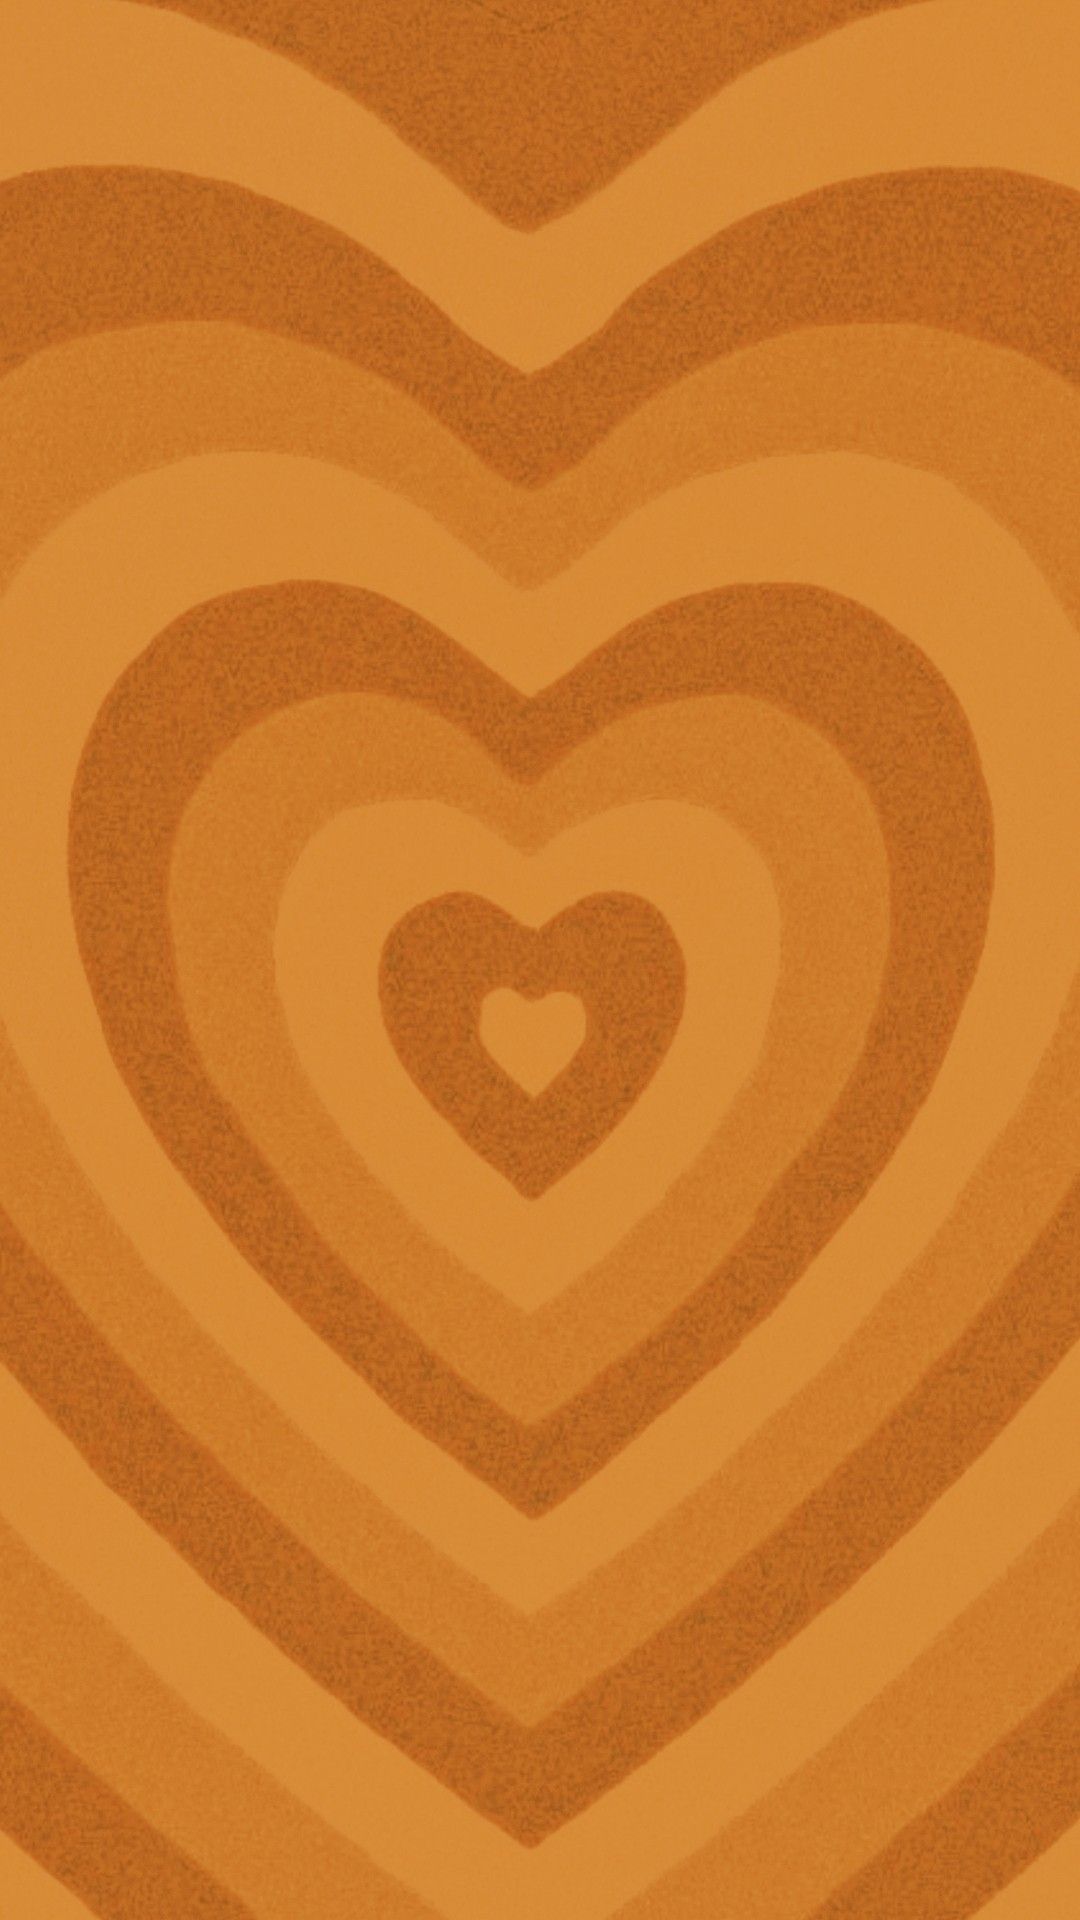 Orange Heart Wallpapers